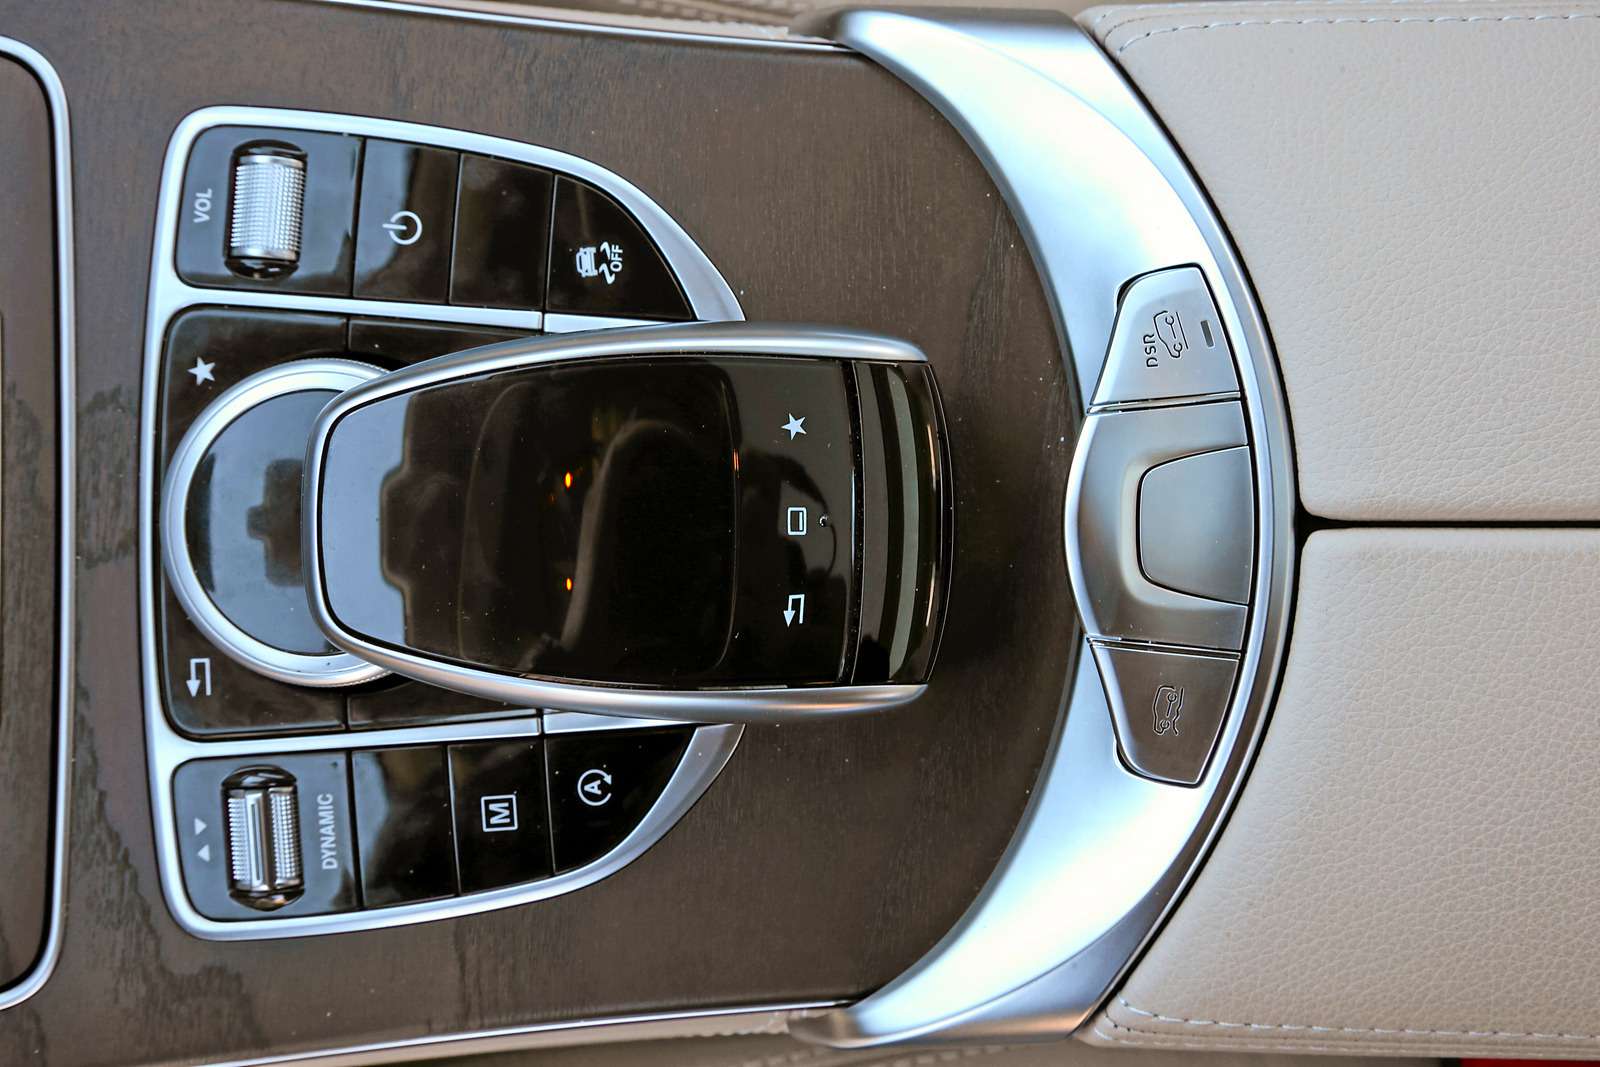 Mercedes-Benz GLC 300. Как водится у Мерседесов, блоки управления настройками кресел вынесены на двери.На центральном туннеле клавиша выбора режимов движения. В «спорте» девятиступенчатый автомат 9G-Tronic работает безупречно.